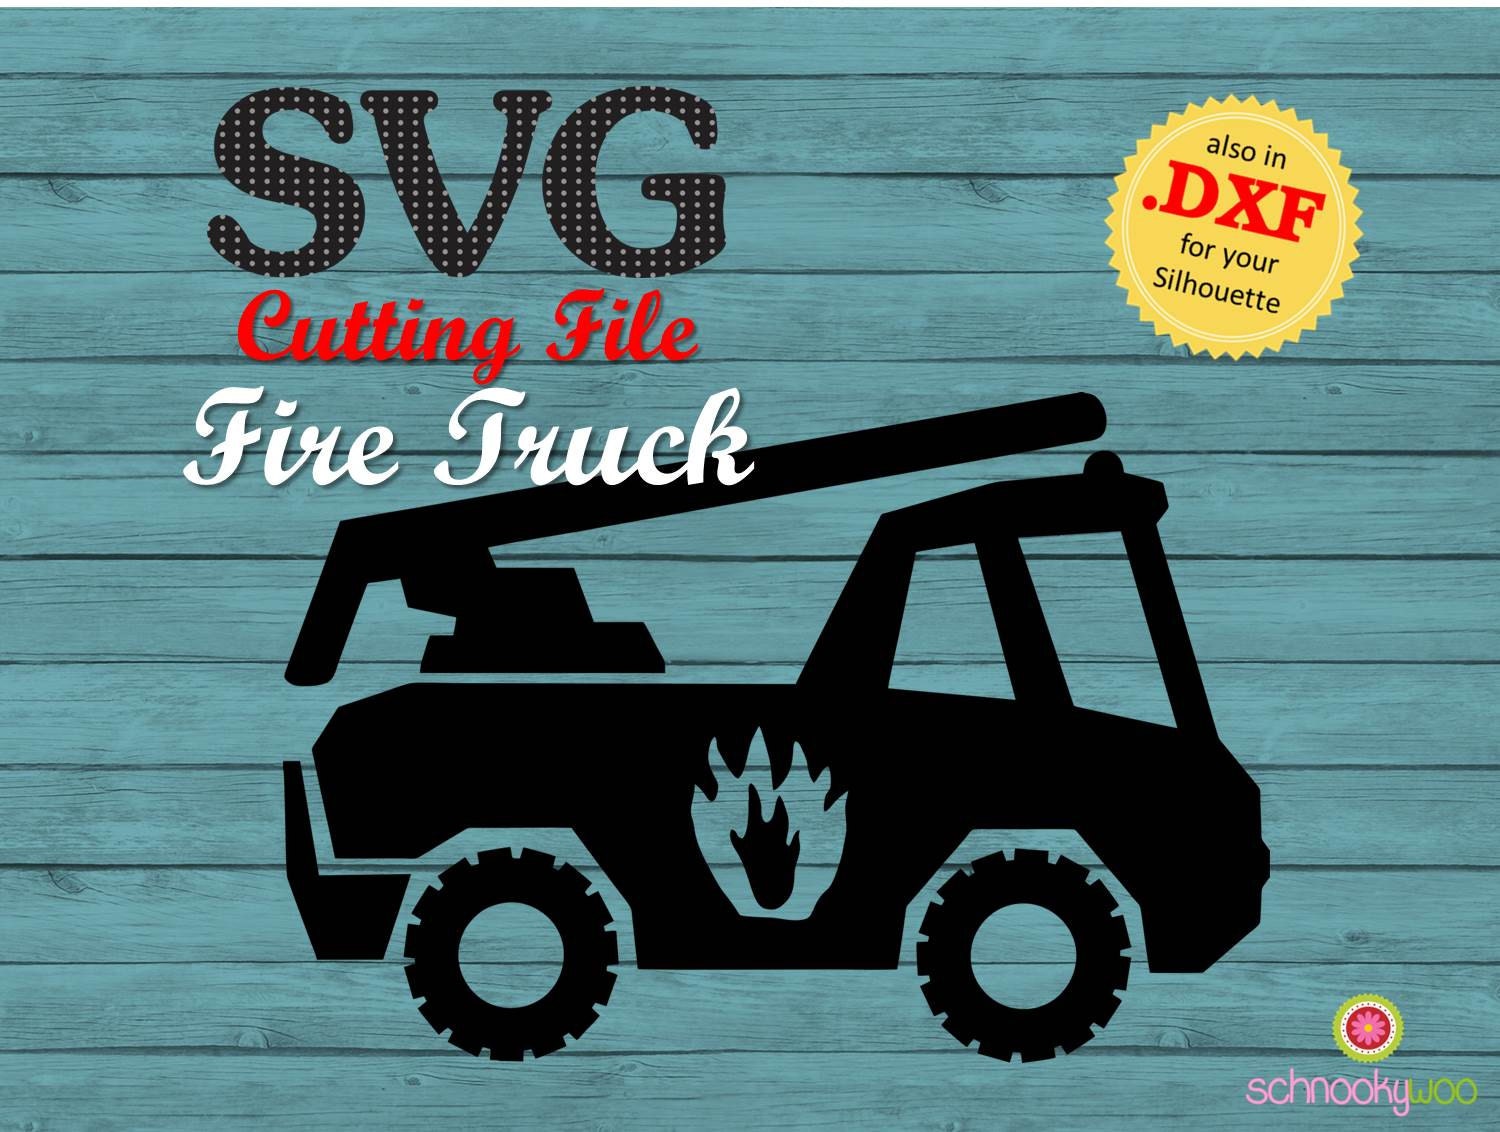 Fire Truck SVG Fire Engine SVG Fire Fighter SVG Firetruck